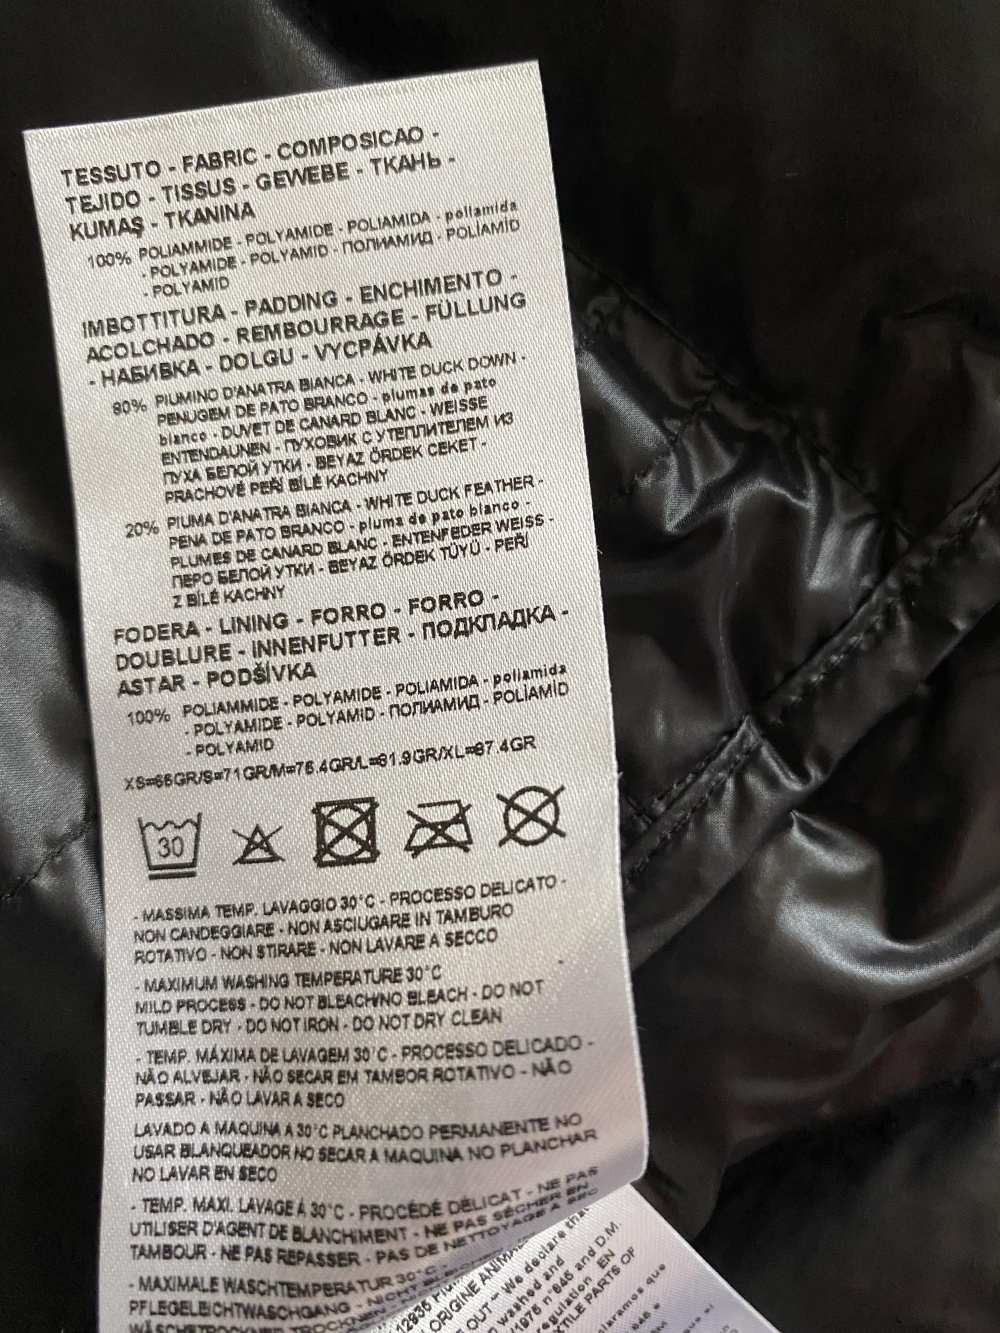 Куртка/пуховик Armani Exchange, размер XL.